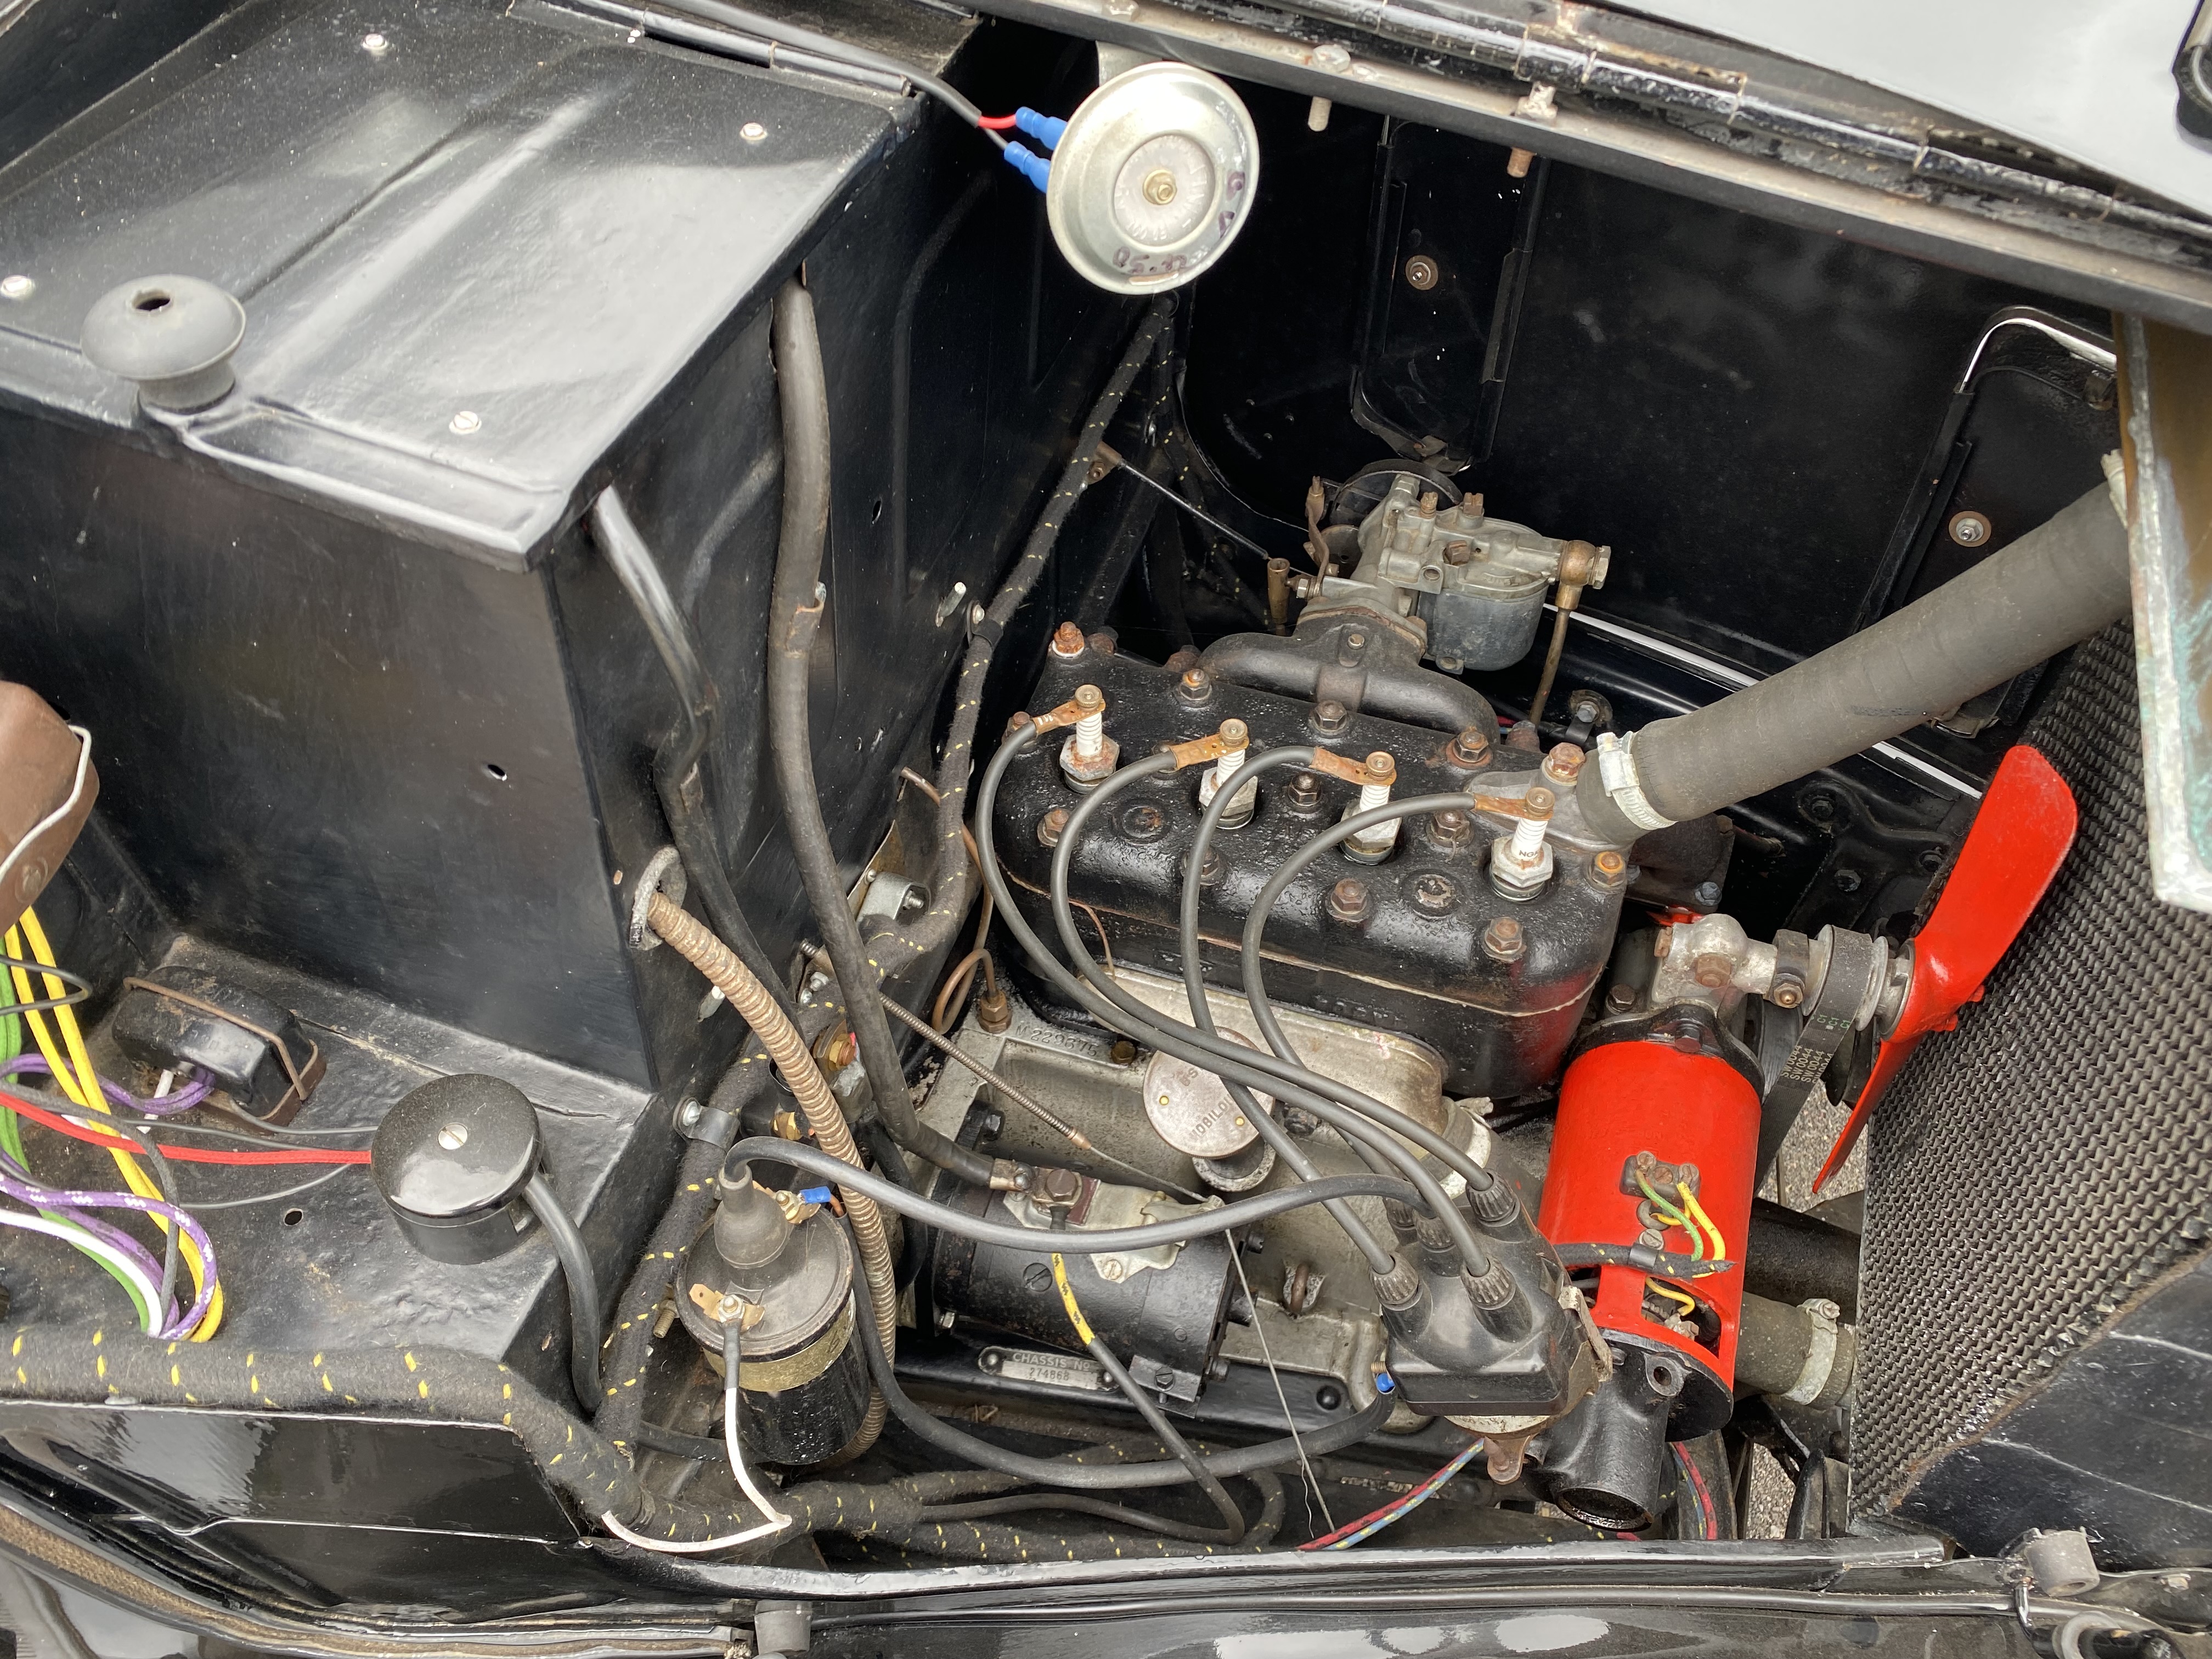 1937 Austin 7 Ruby Reg. no. DRB 716 Chassis no. A/RR274868 Engine no. M229675 - Image 4 of 10